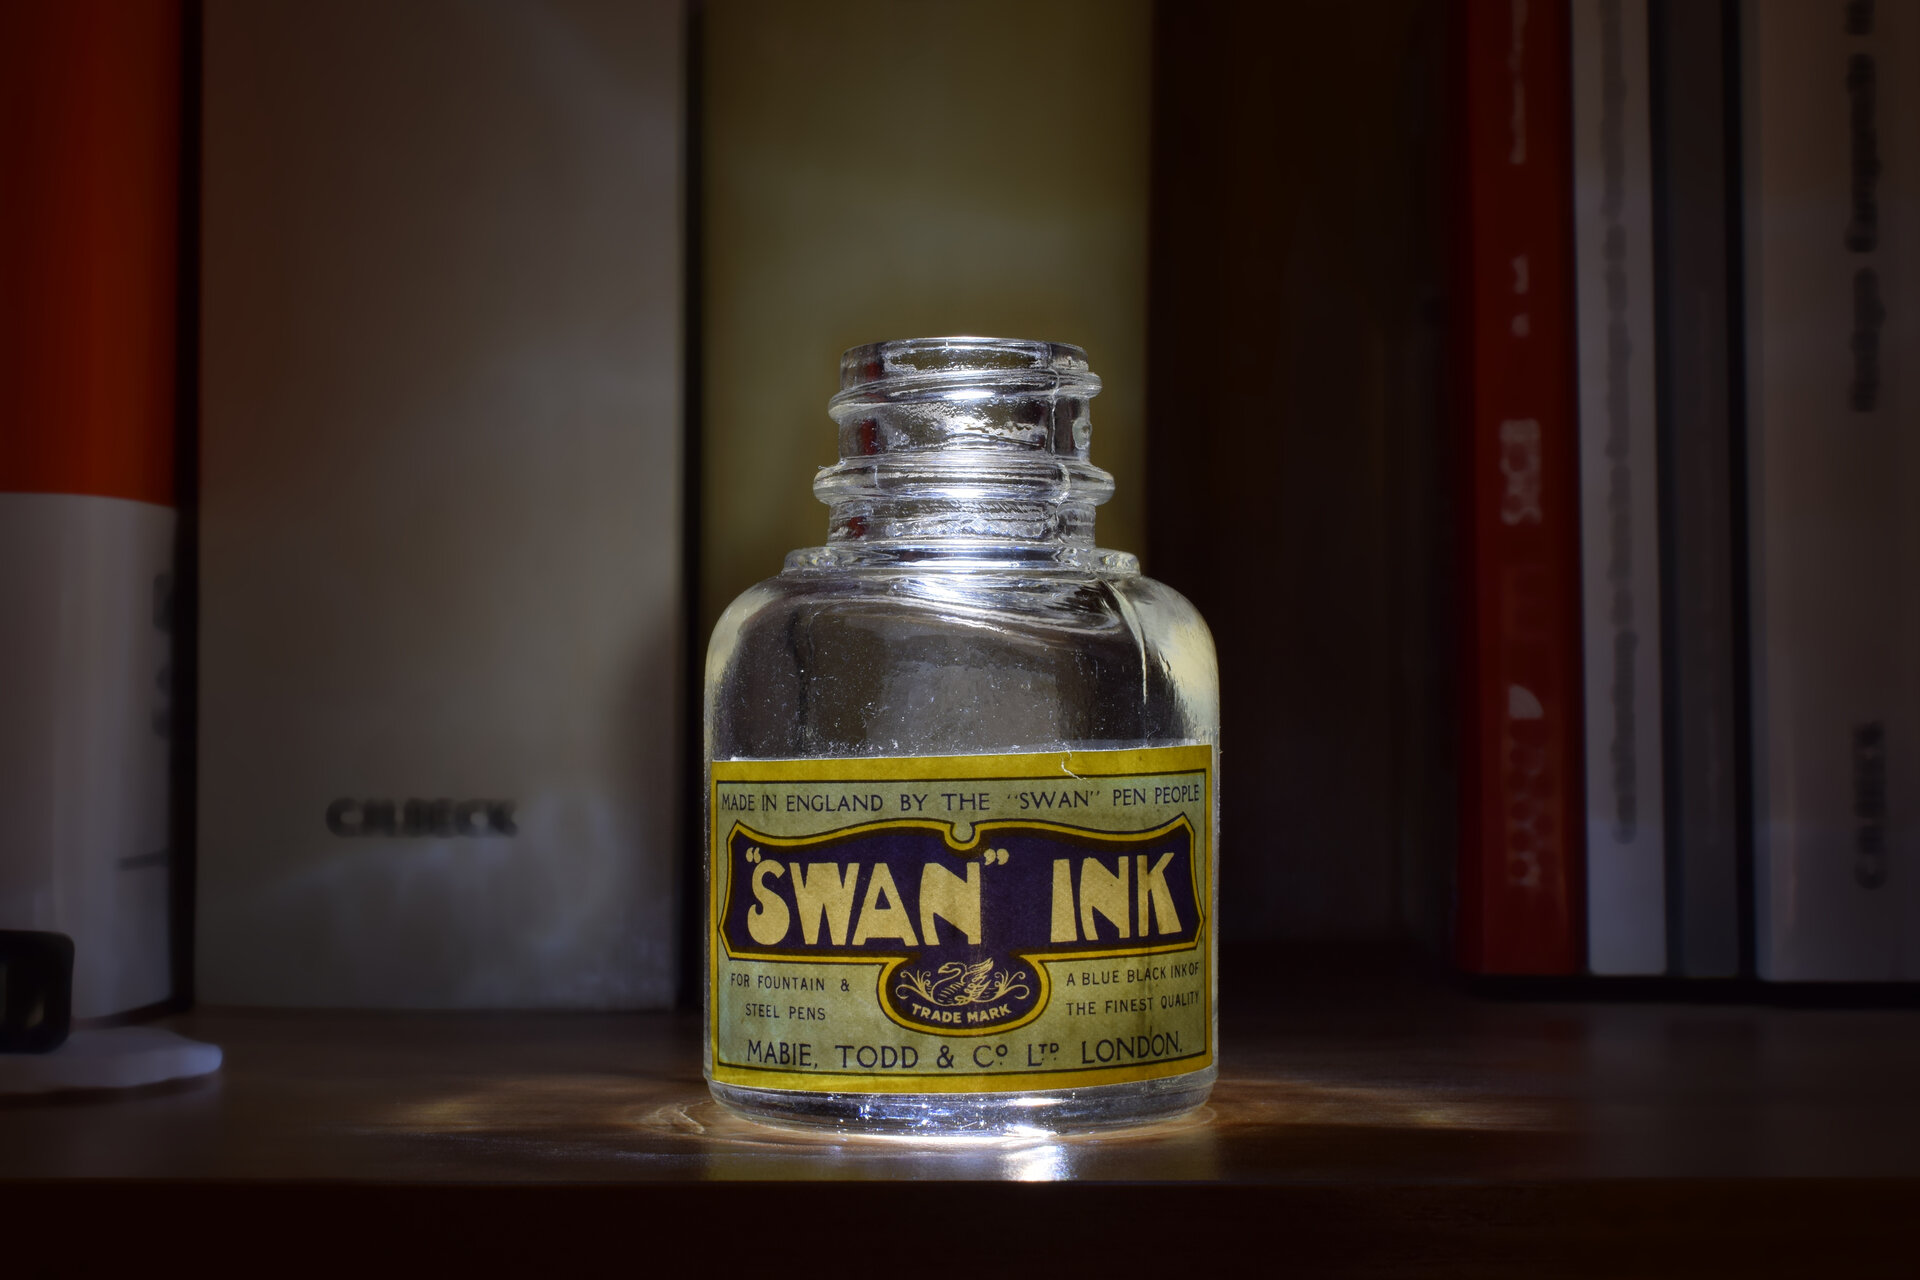 glowing swan ink bottle